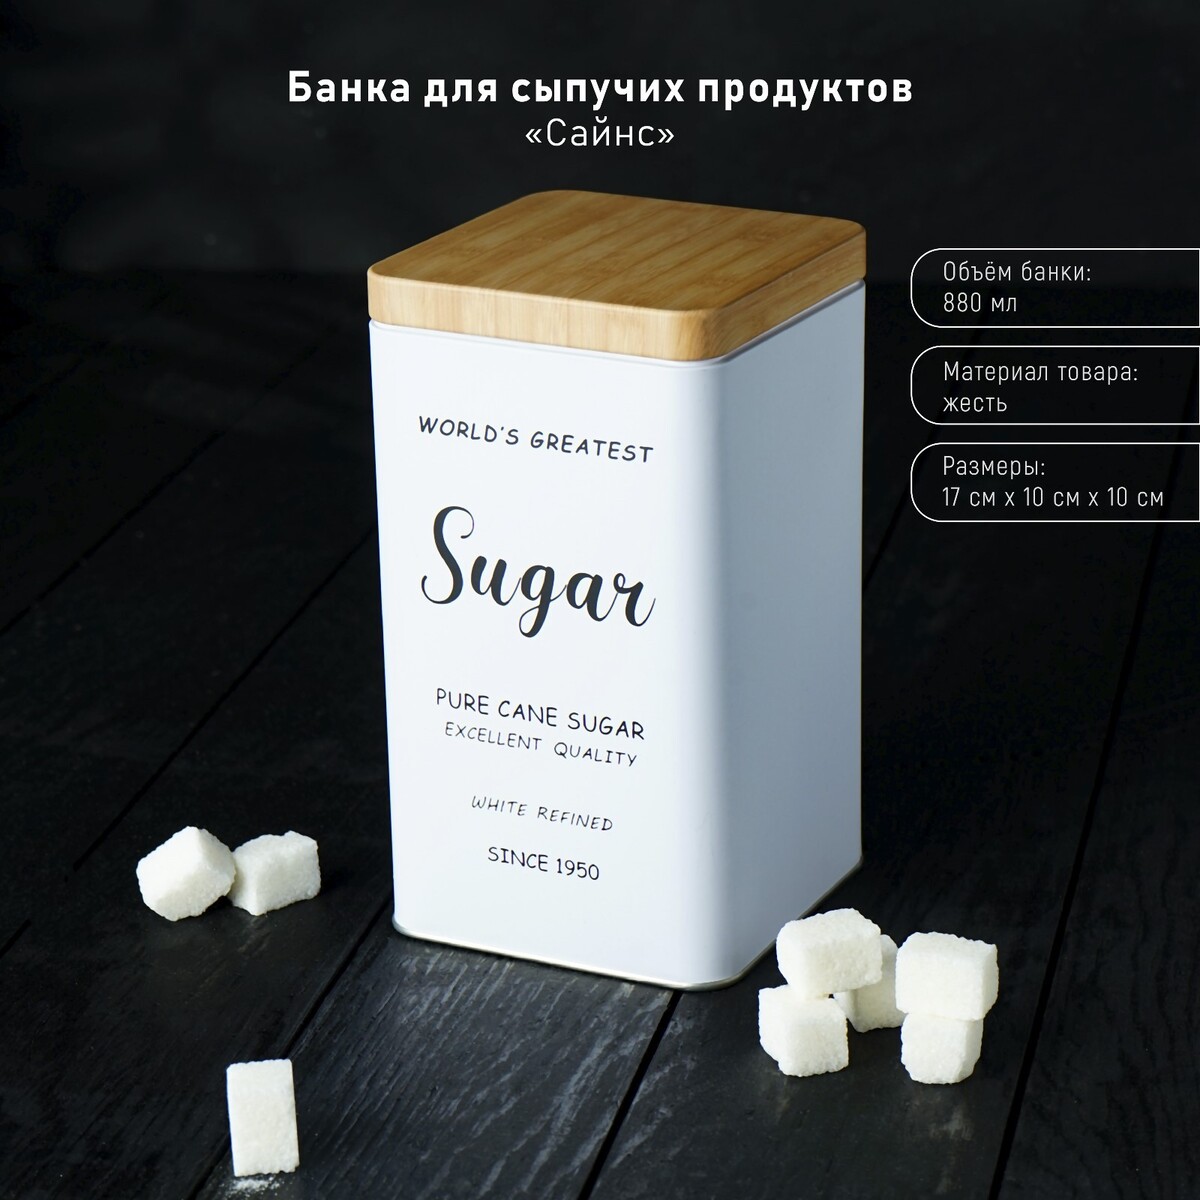 Банка для сыпучих продуктов (сахар) жженый сахар